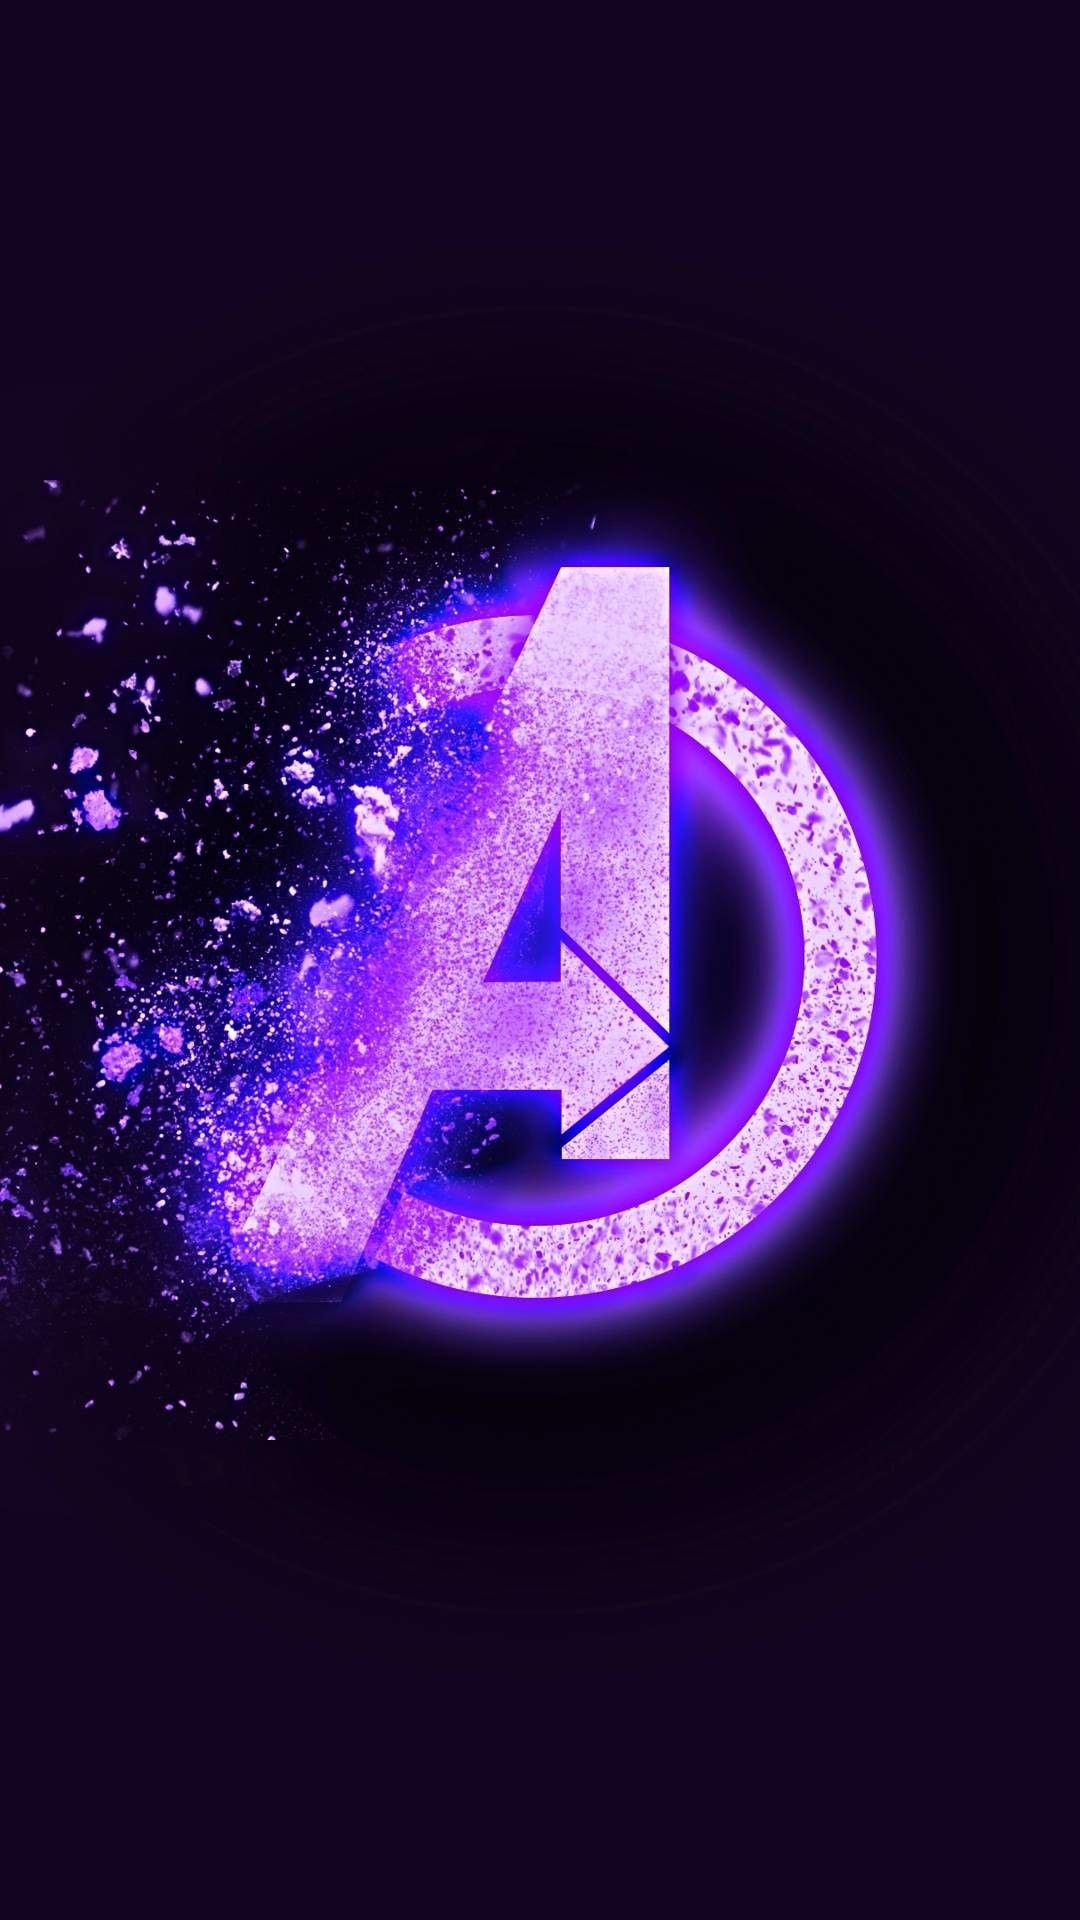 Avengers Logo Wallpaper. Marvel wallpaper, Marvel wallpaper hd, Marvel background